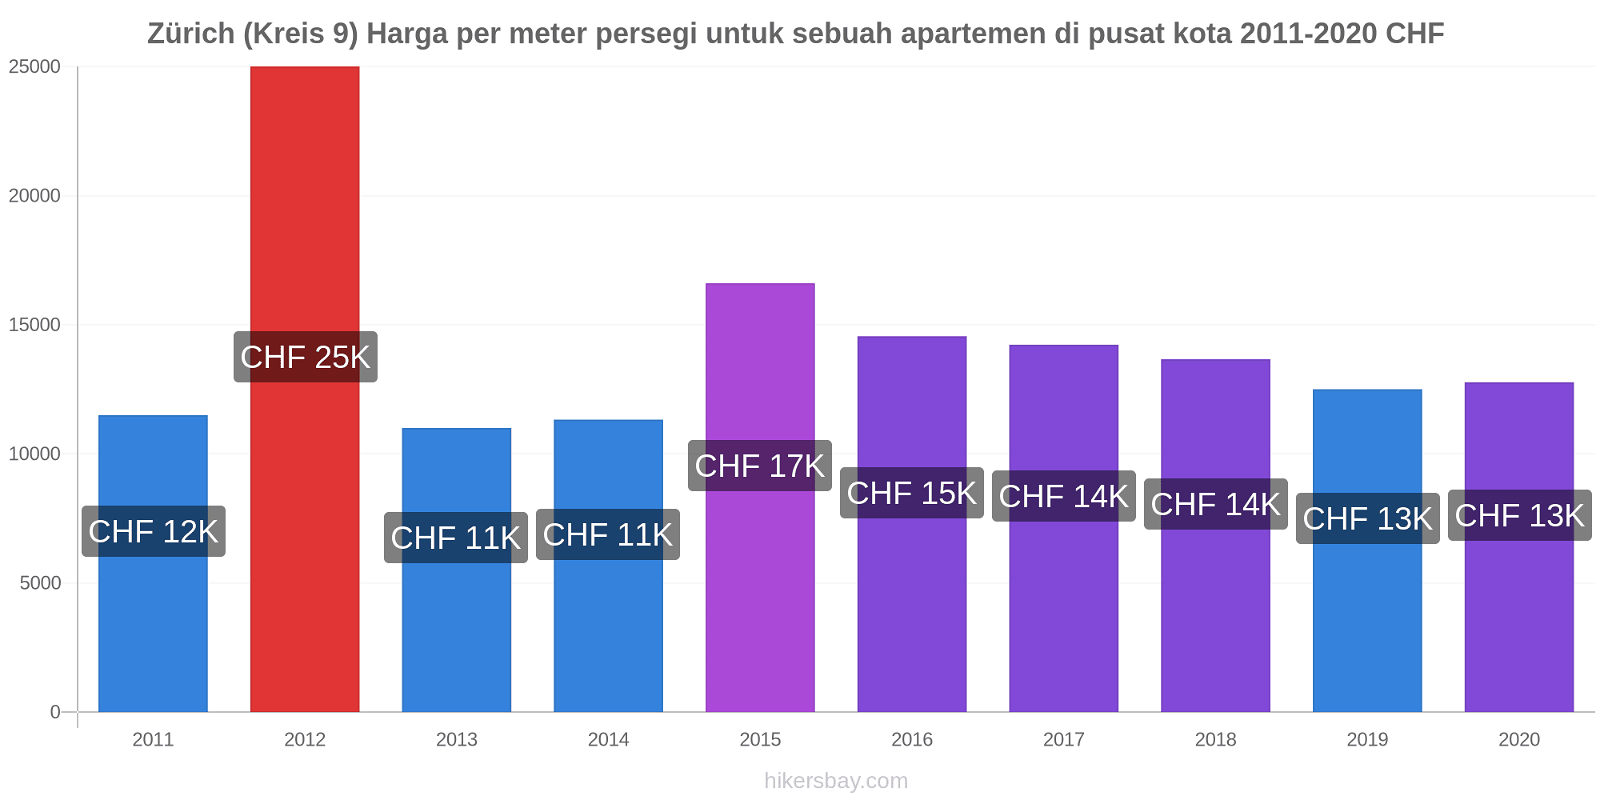 Zürich (Kreis 9) perubahan harga Harga per meter persegi untuk sebuah apartemen di pusat kota hikersbay.com